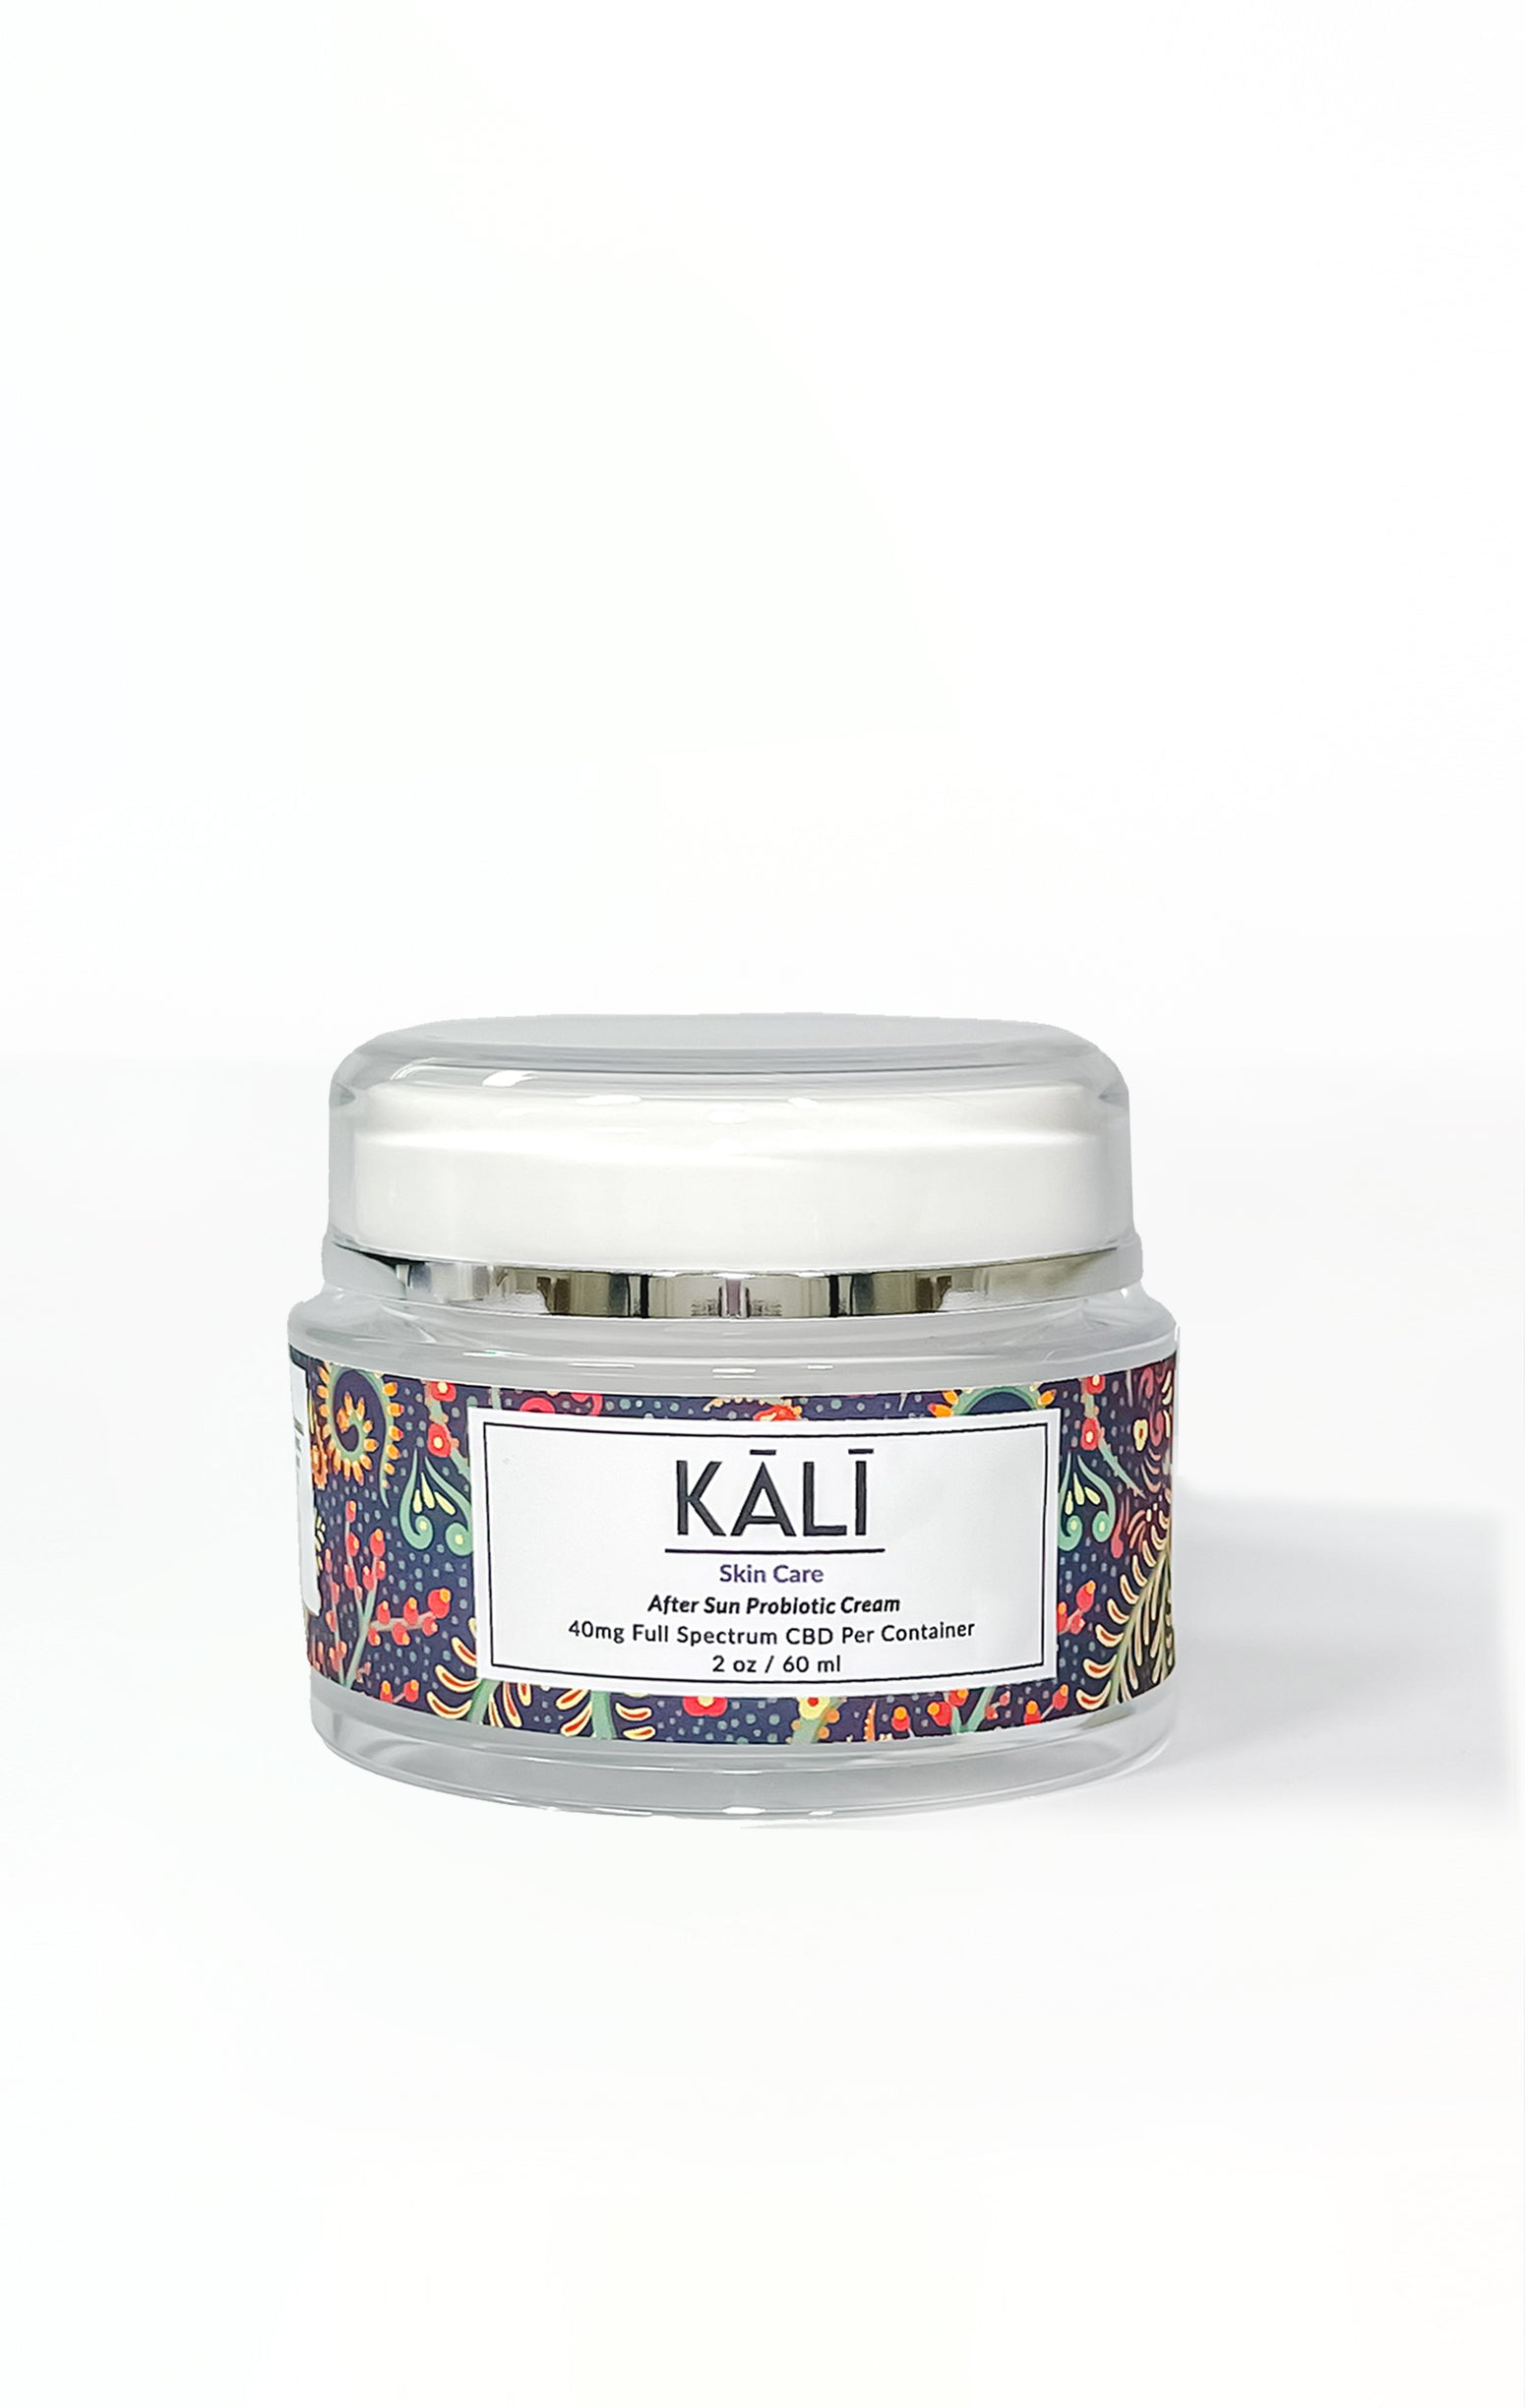 Kali - CBD After Sun Probiotic Cream